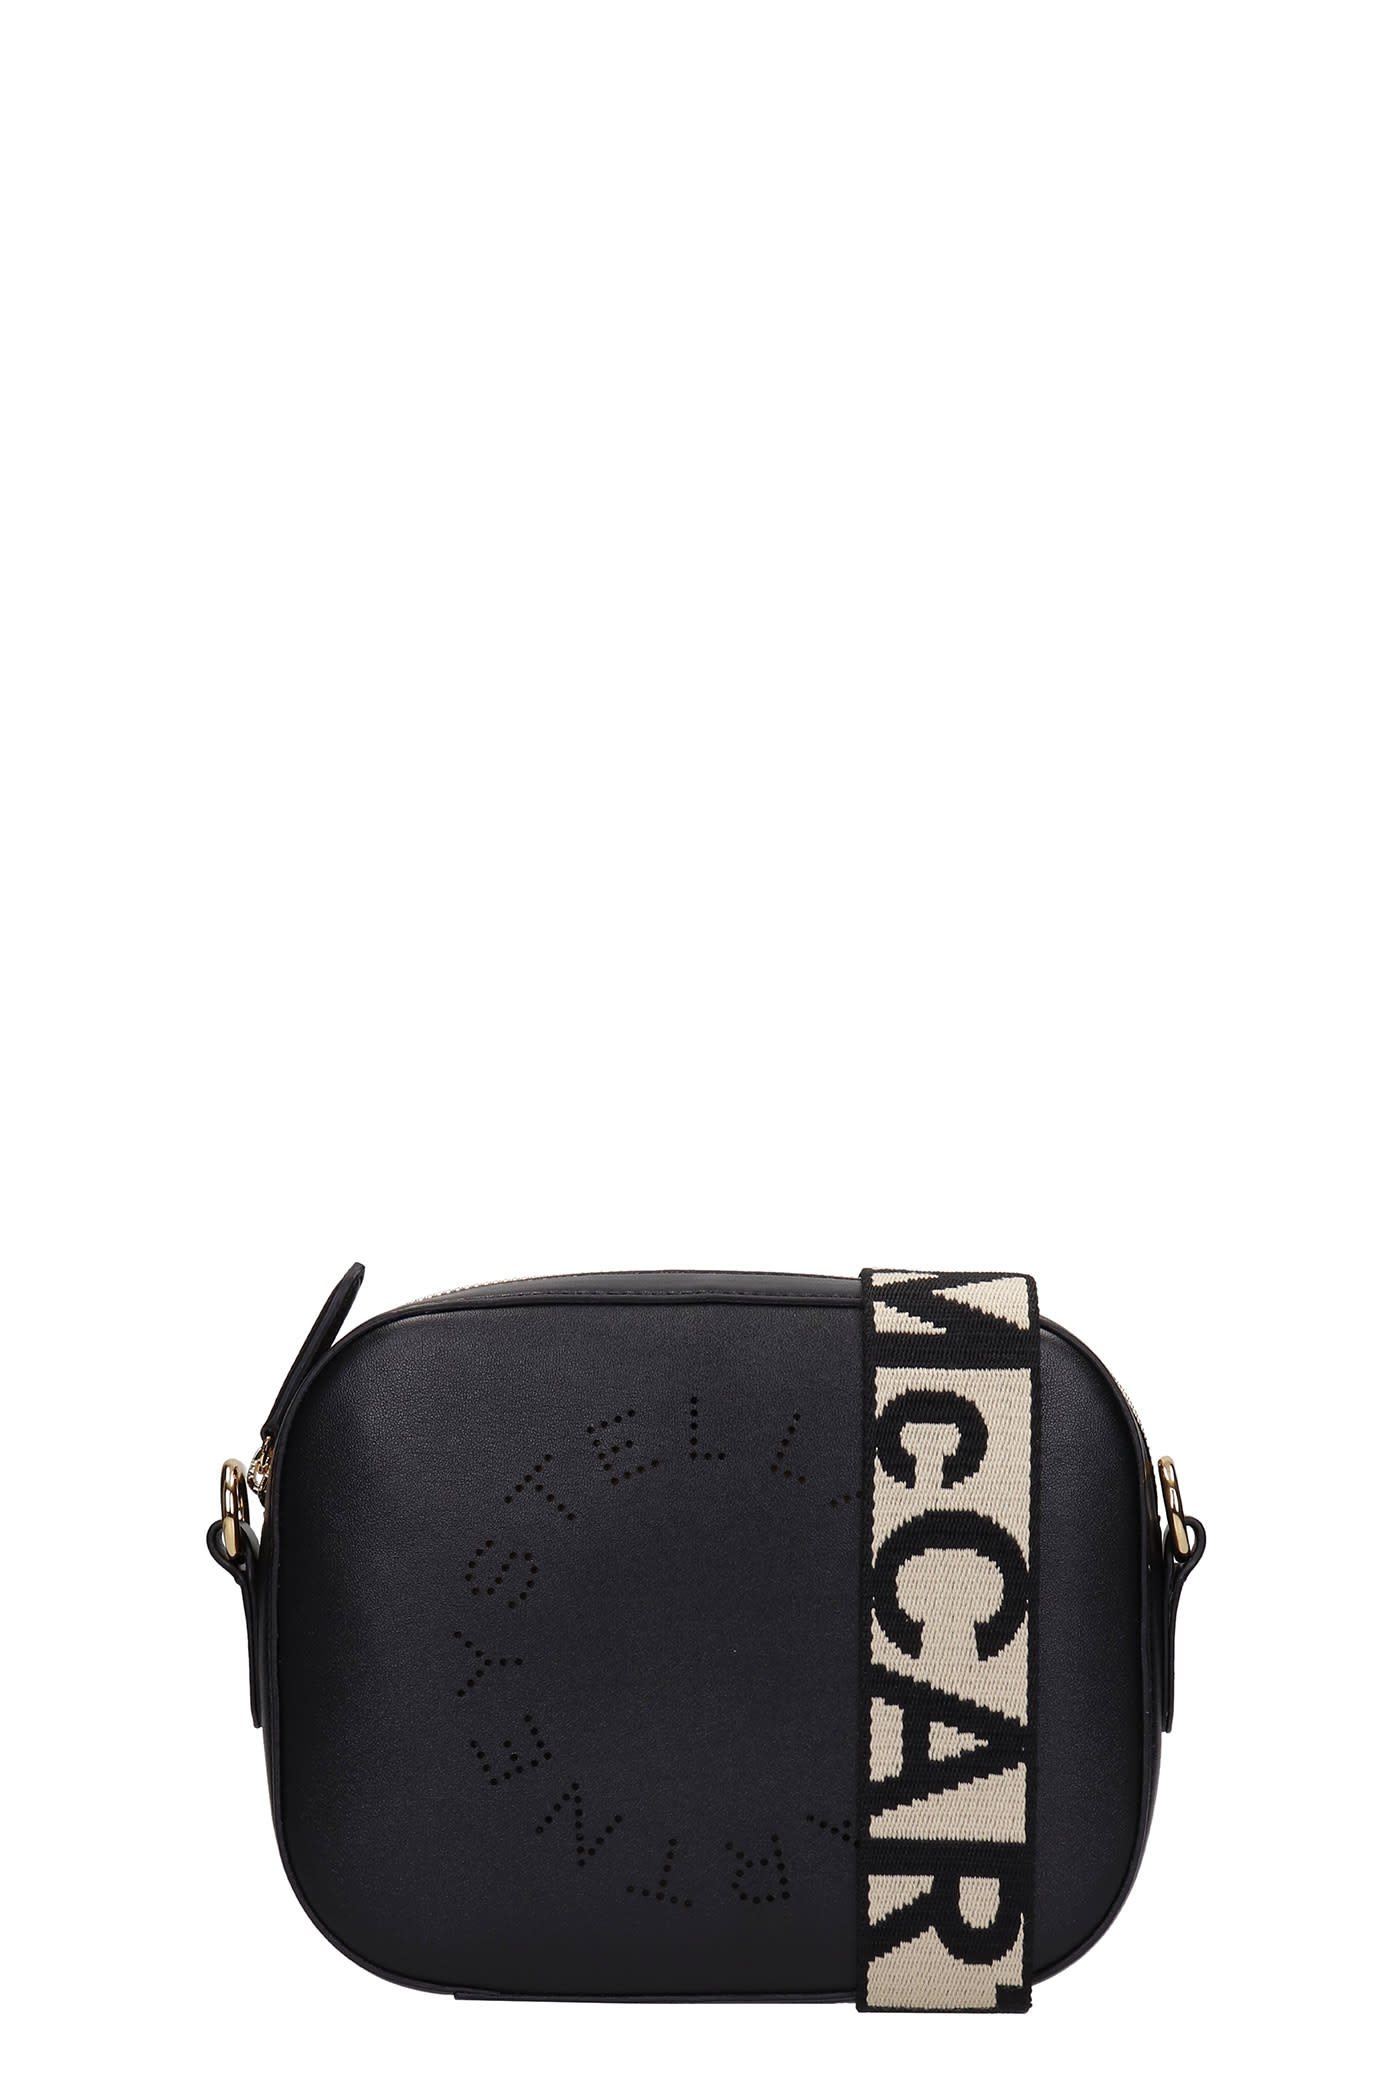 Stella McCartney Camera Bag Shoulder Bag In Black Leather